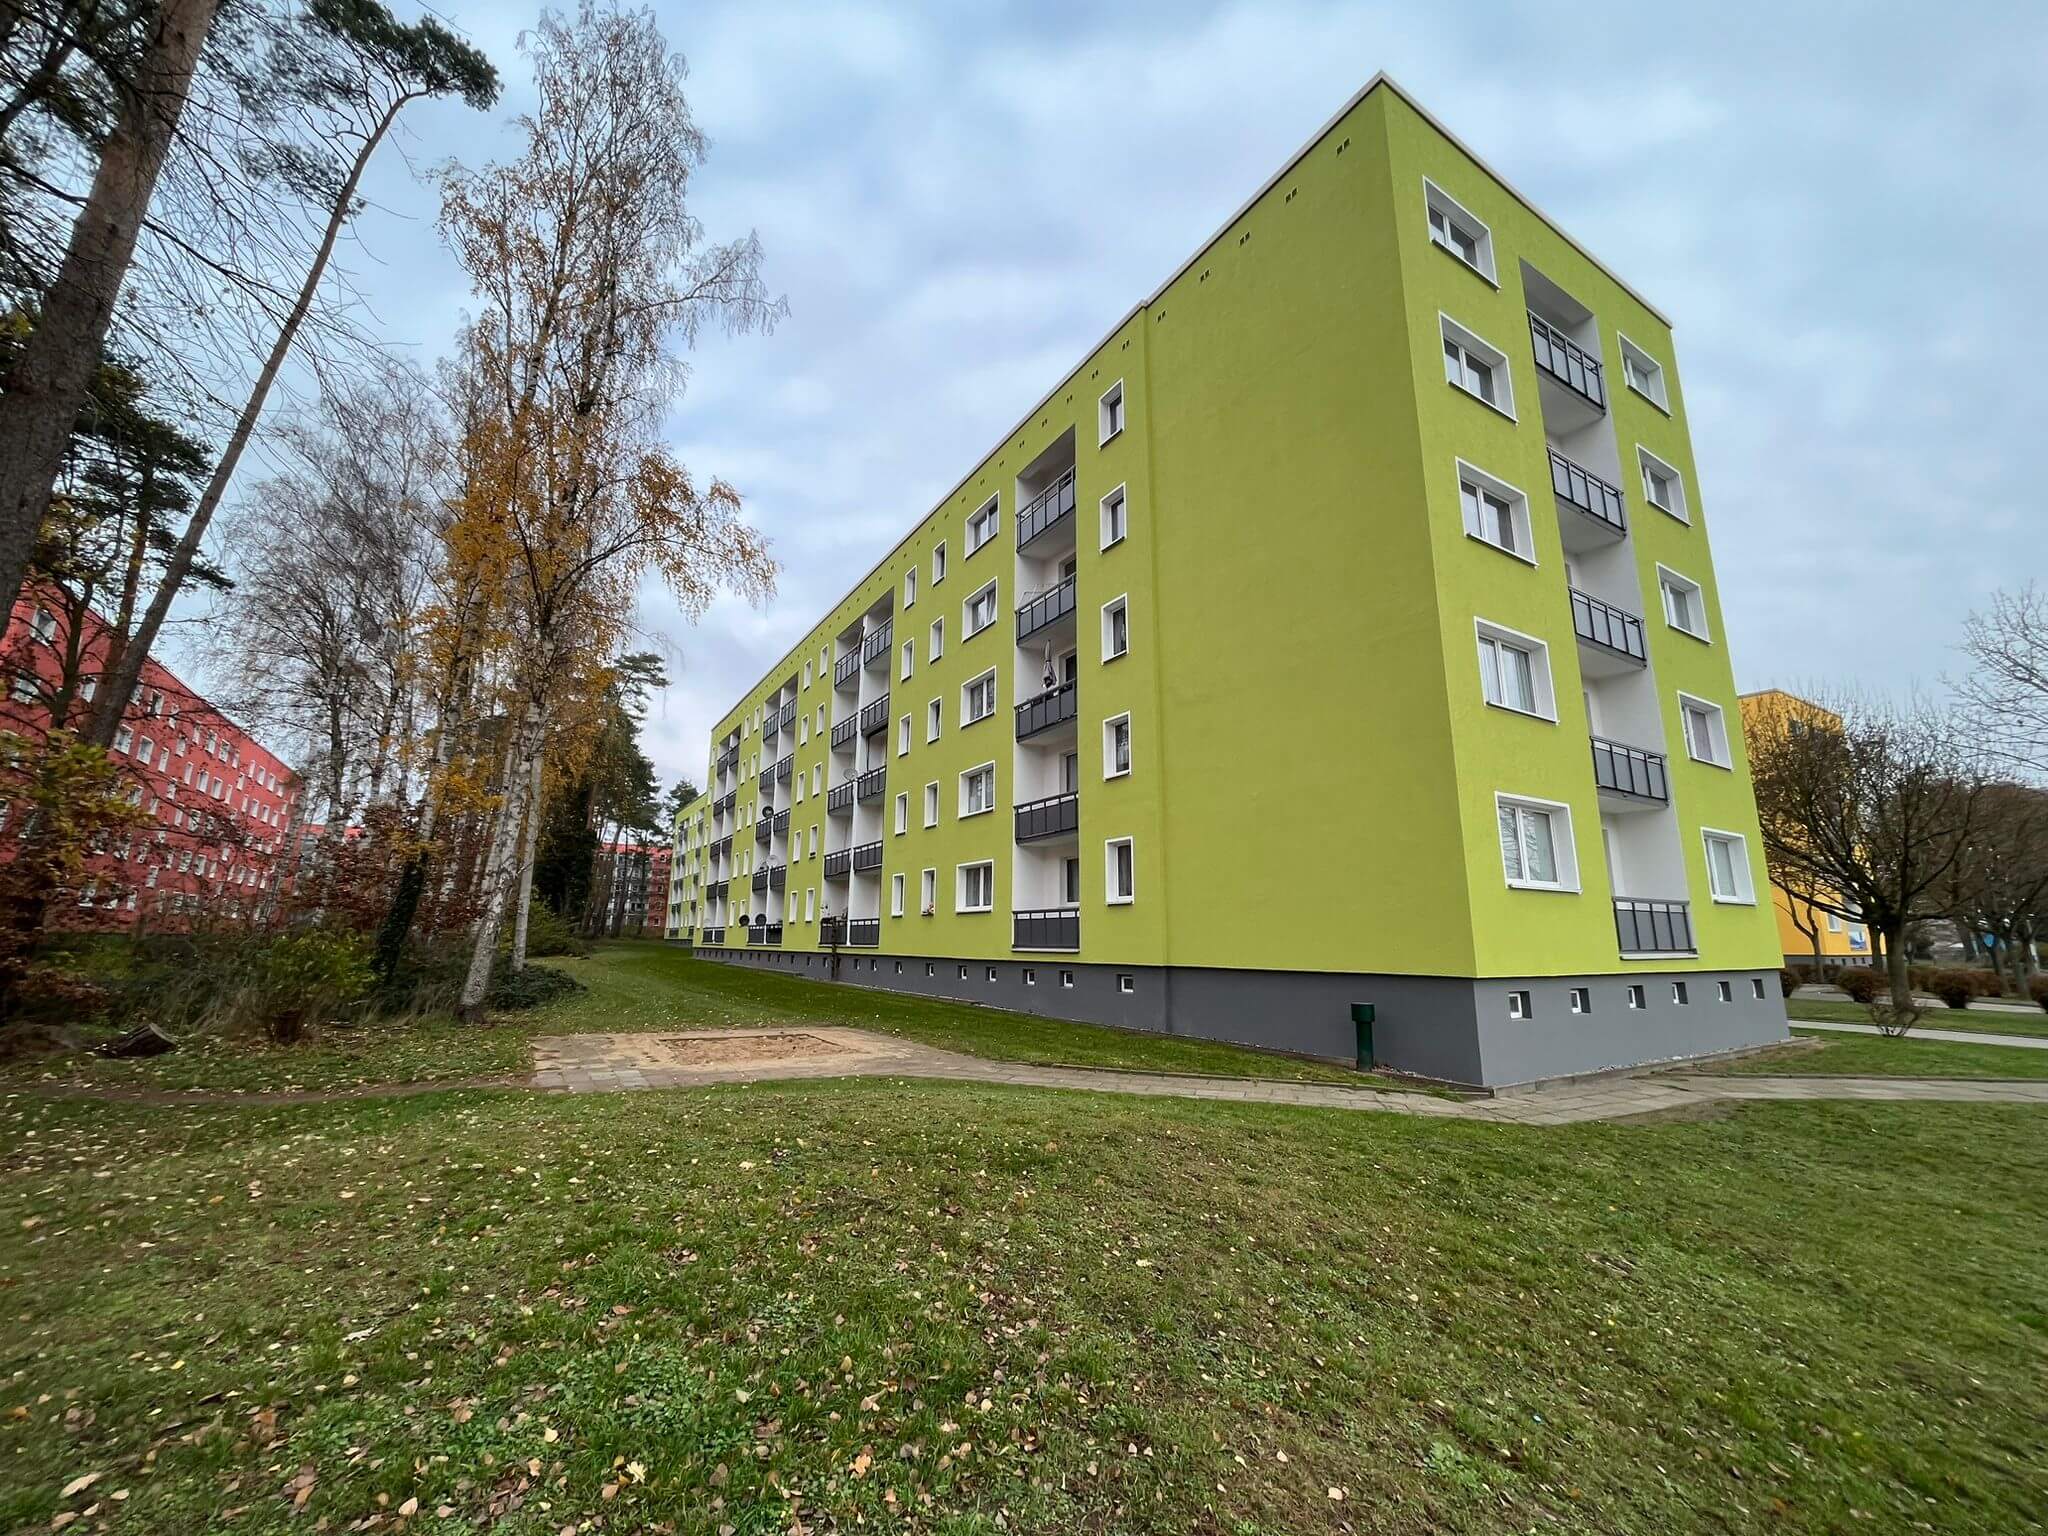 Grün gestrichene Fassade von einem Mehrfamilienhaus in 04177 Leipzig